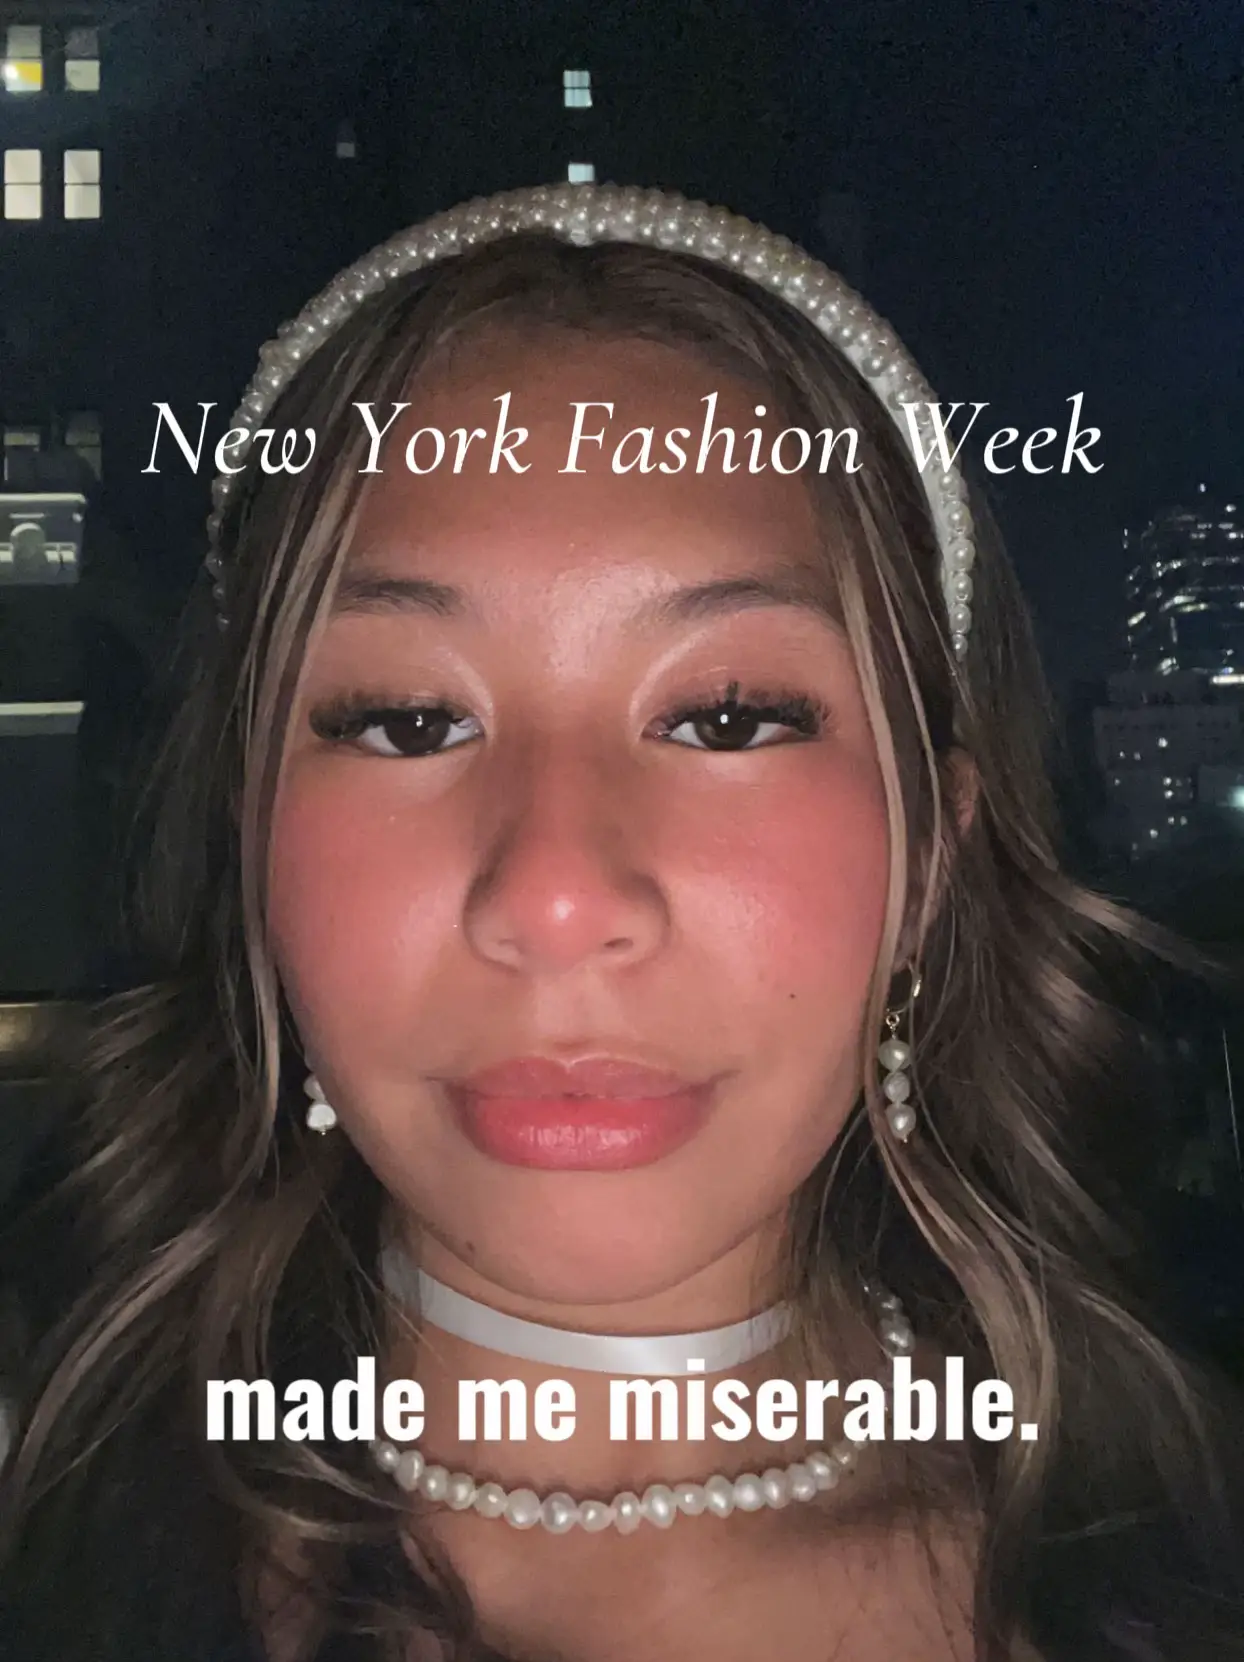 new york fashion week events - Lemon8 Search